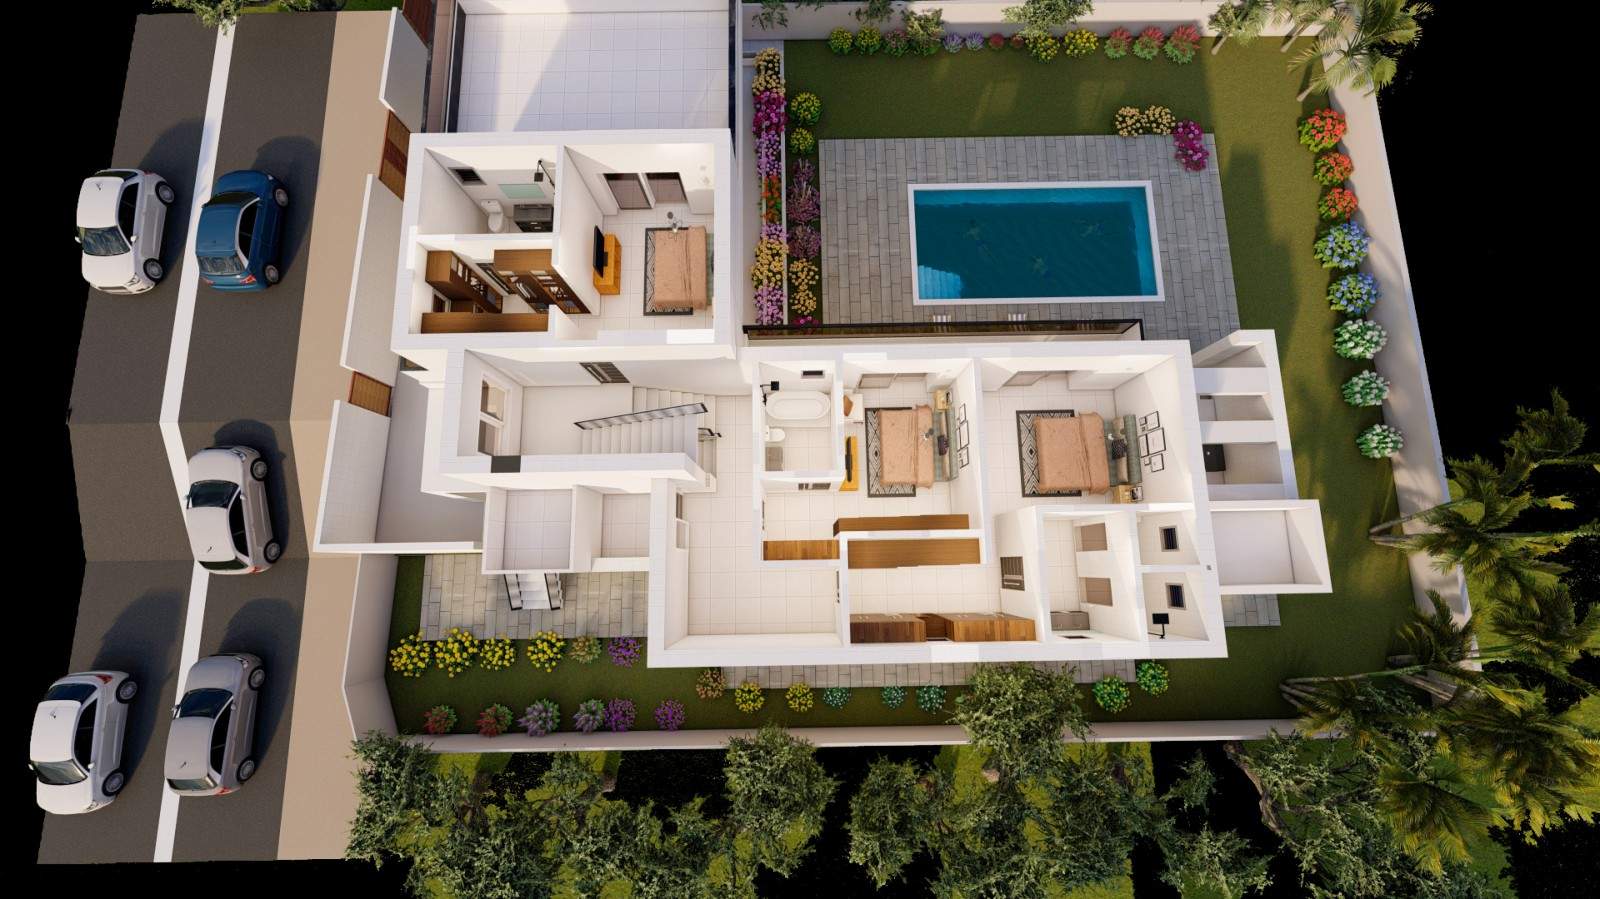 Villa de 4 dormitorios en construcción, en venta en Porto de Mós, Algarve_211035